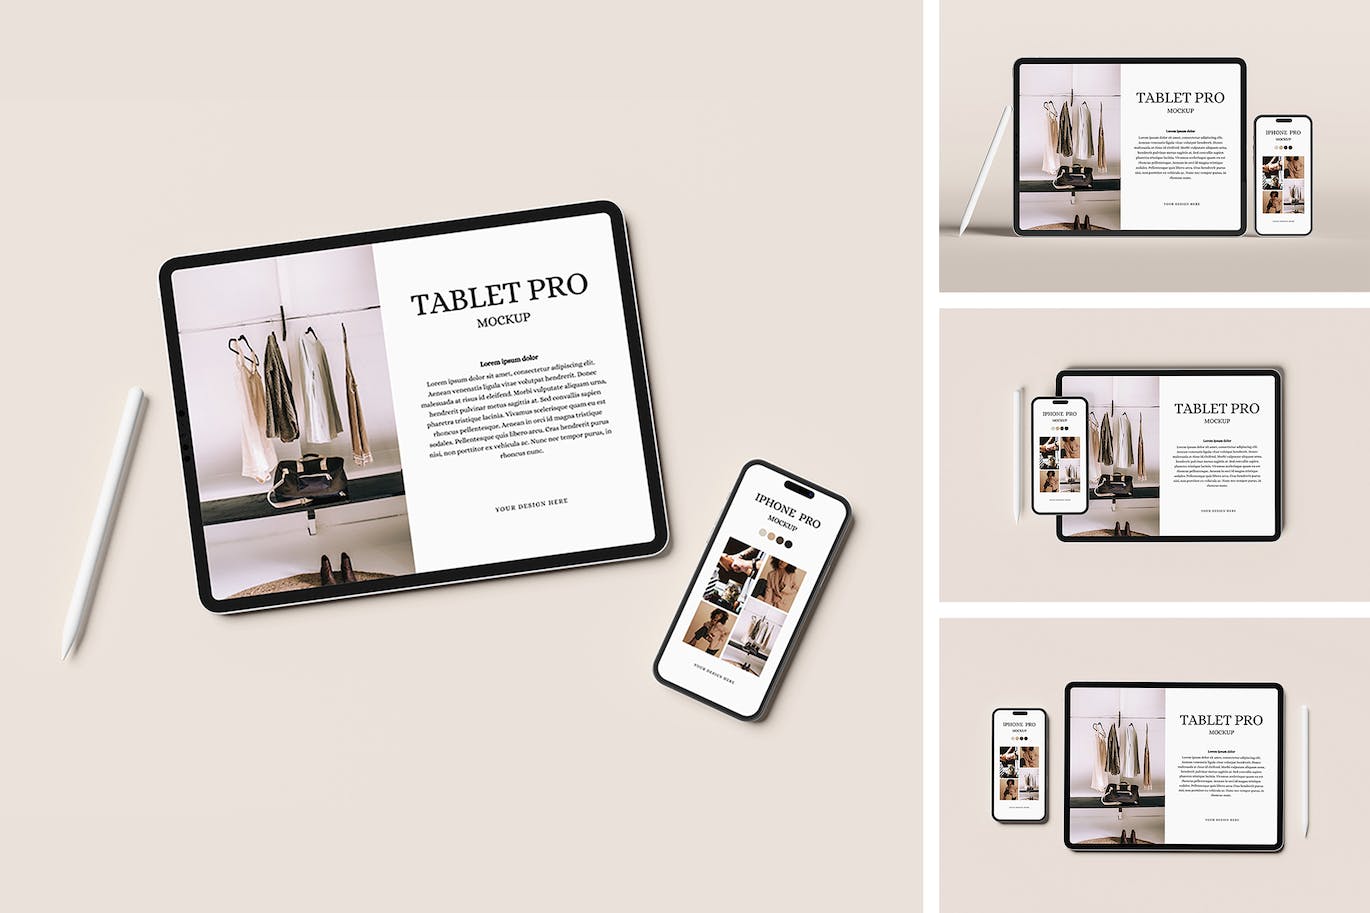 全面屏iPad苹果平板电脑&iPhone 14Pro手机样机tablet-pro-phone-mockup